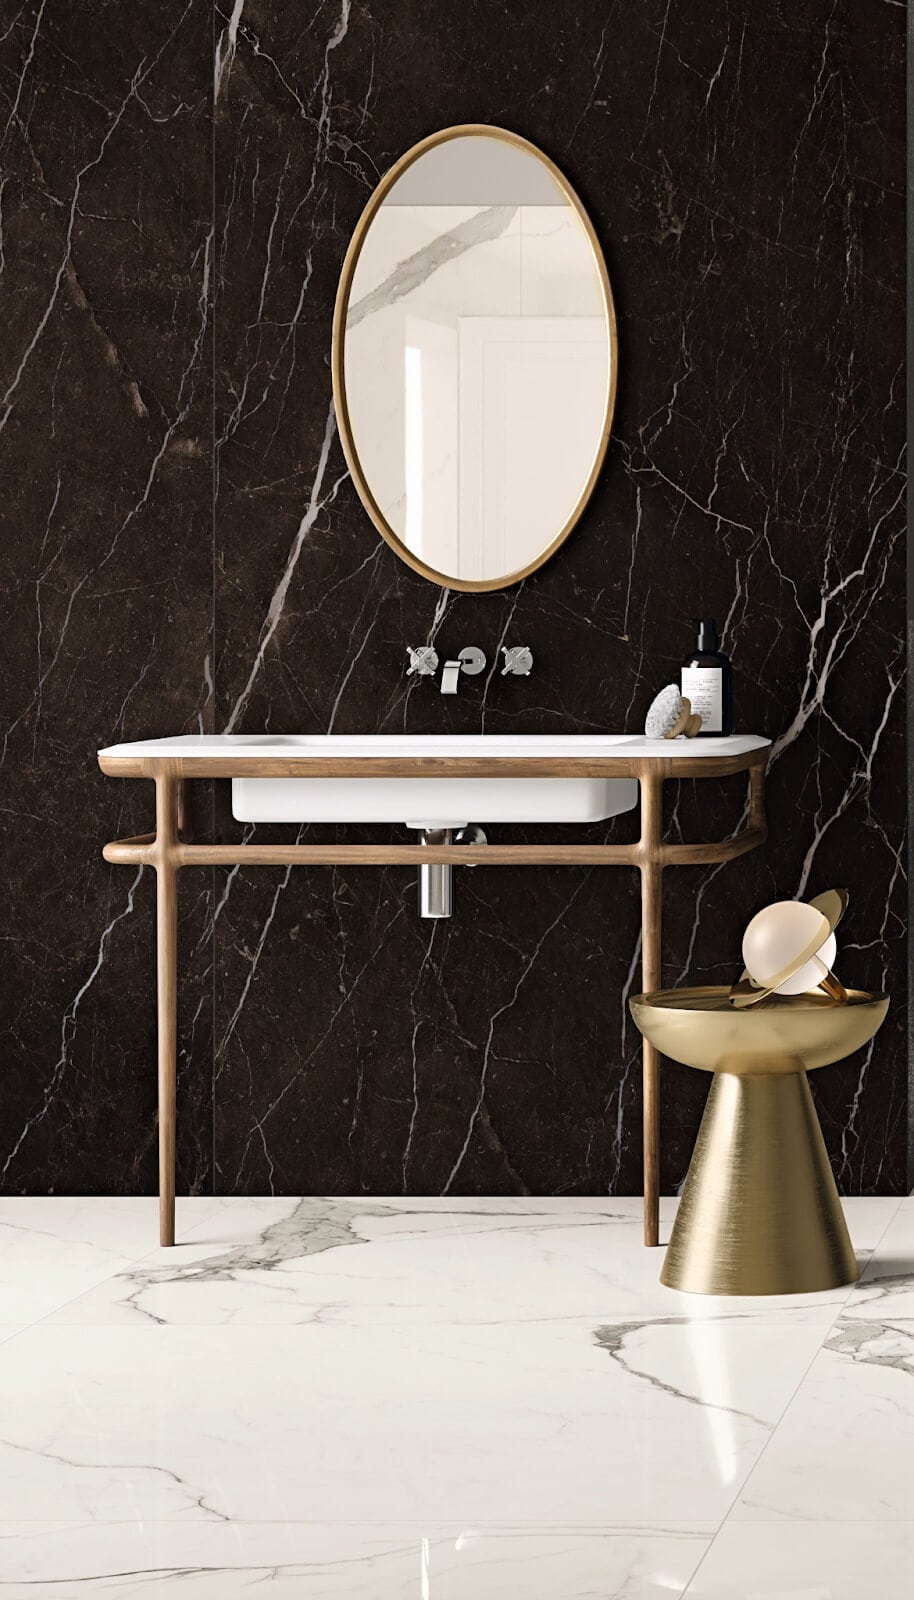 Bathroom with gauged porcelain tile backsplash in a black marble look

